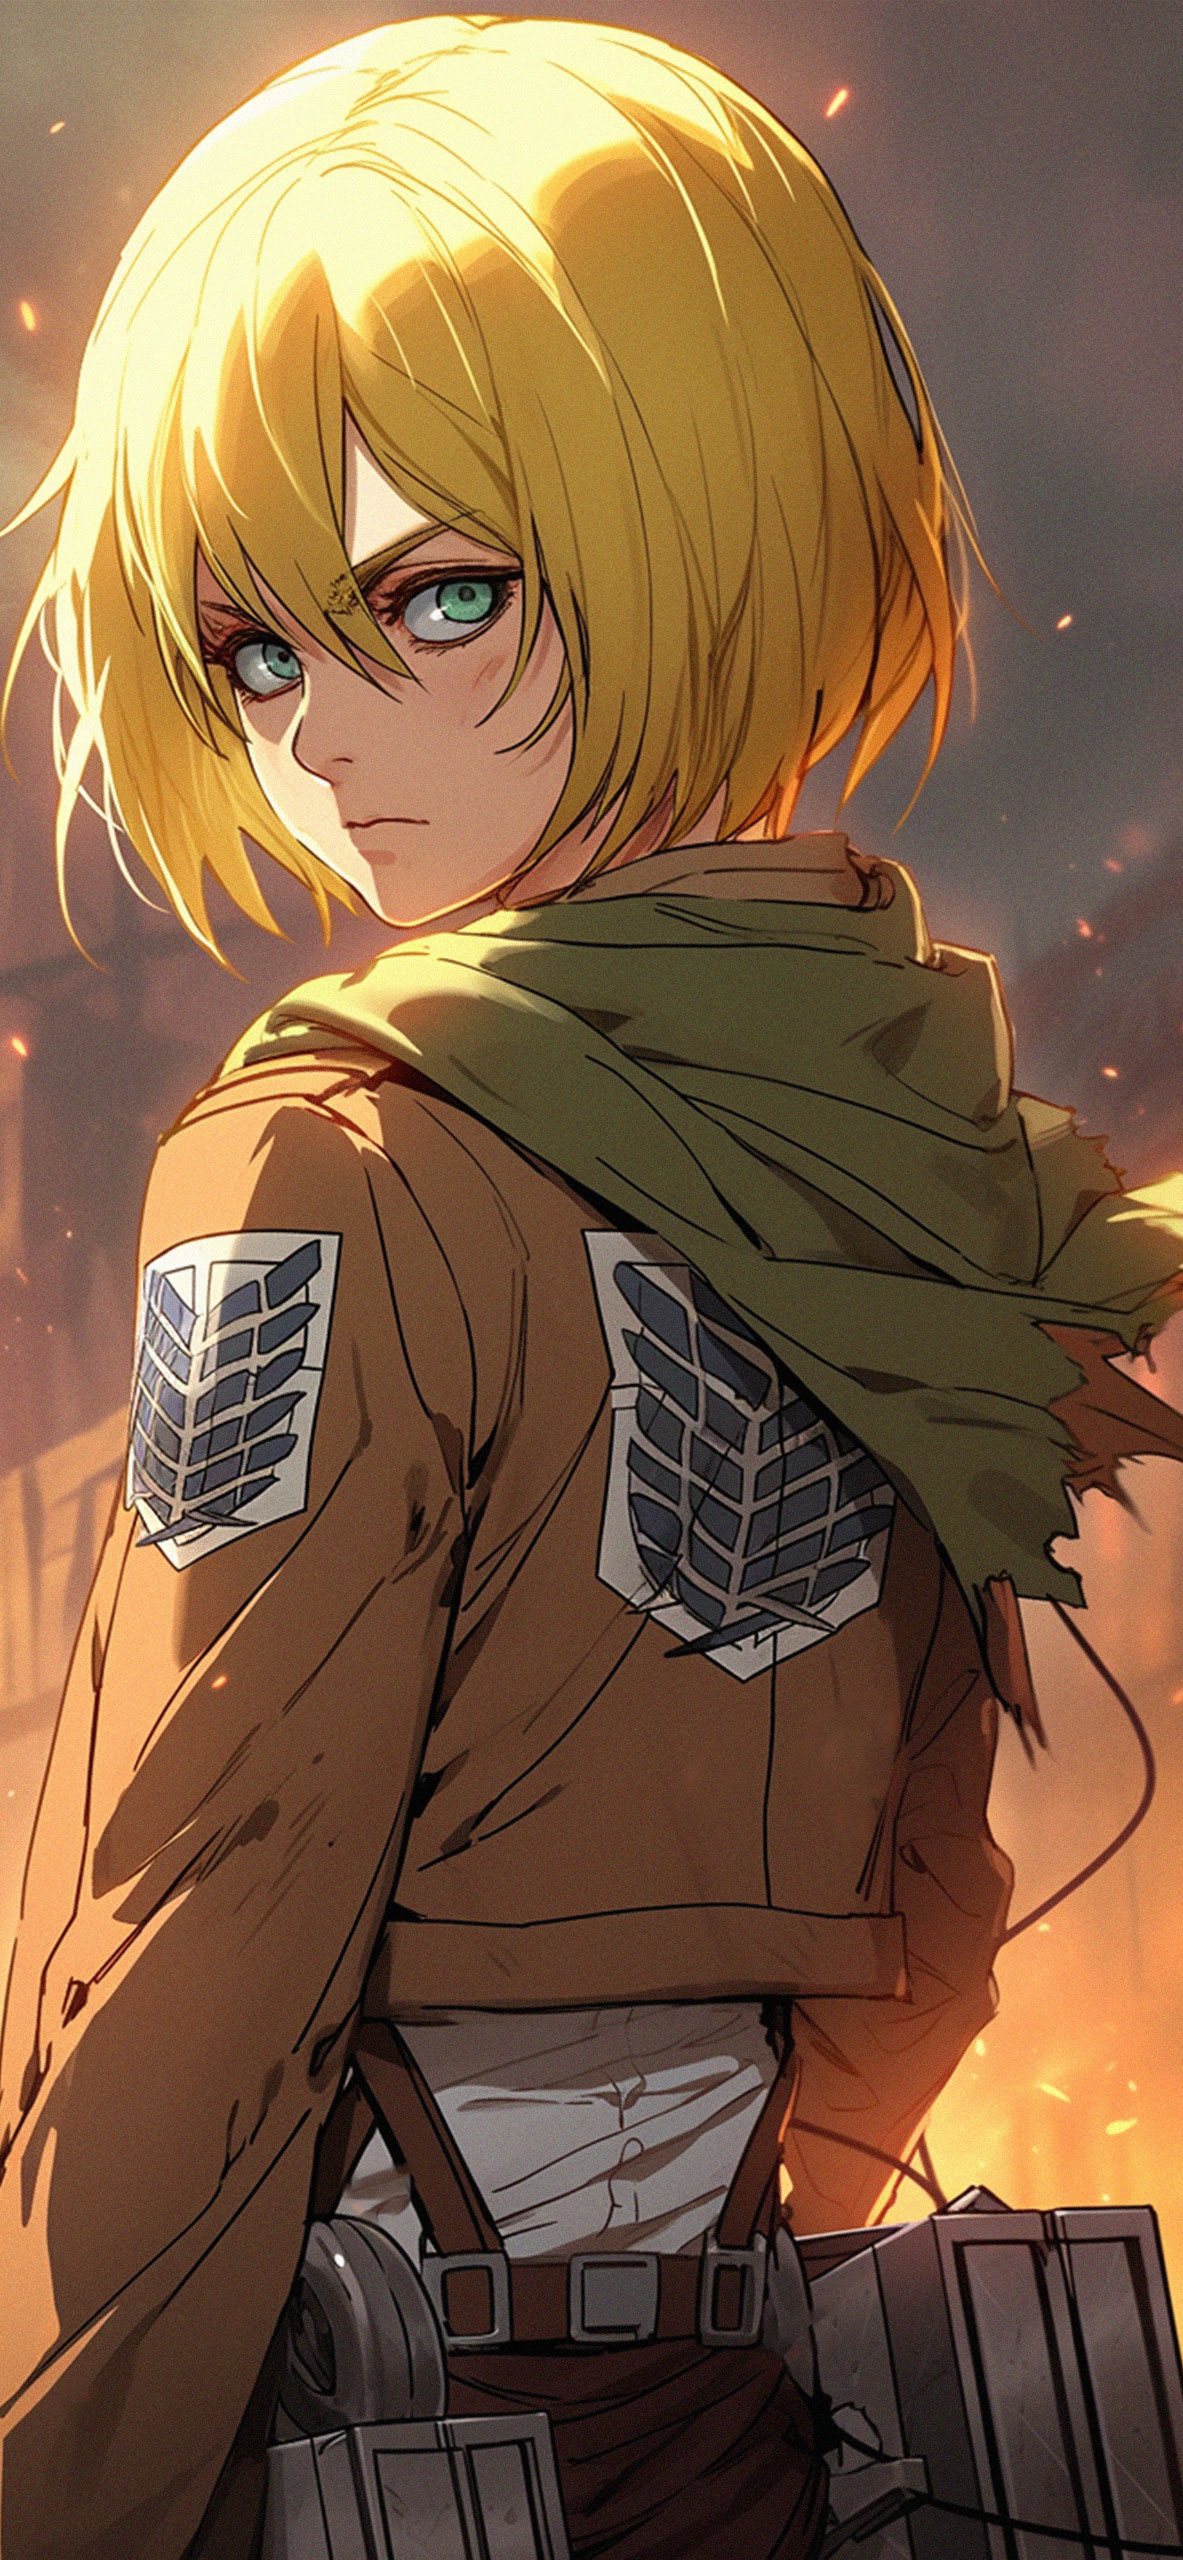 AOT cool armin art wallpaper Armin arlert anime wallpaper HD